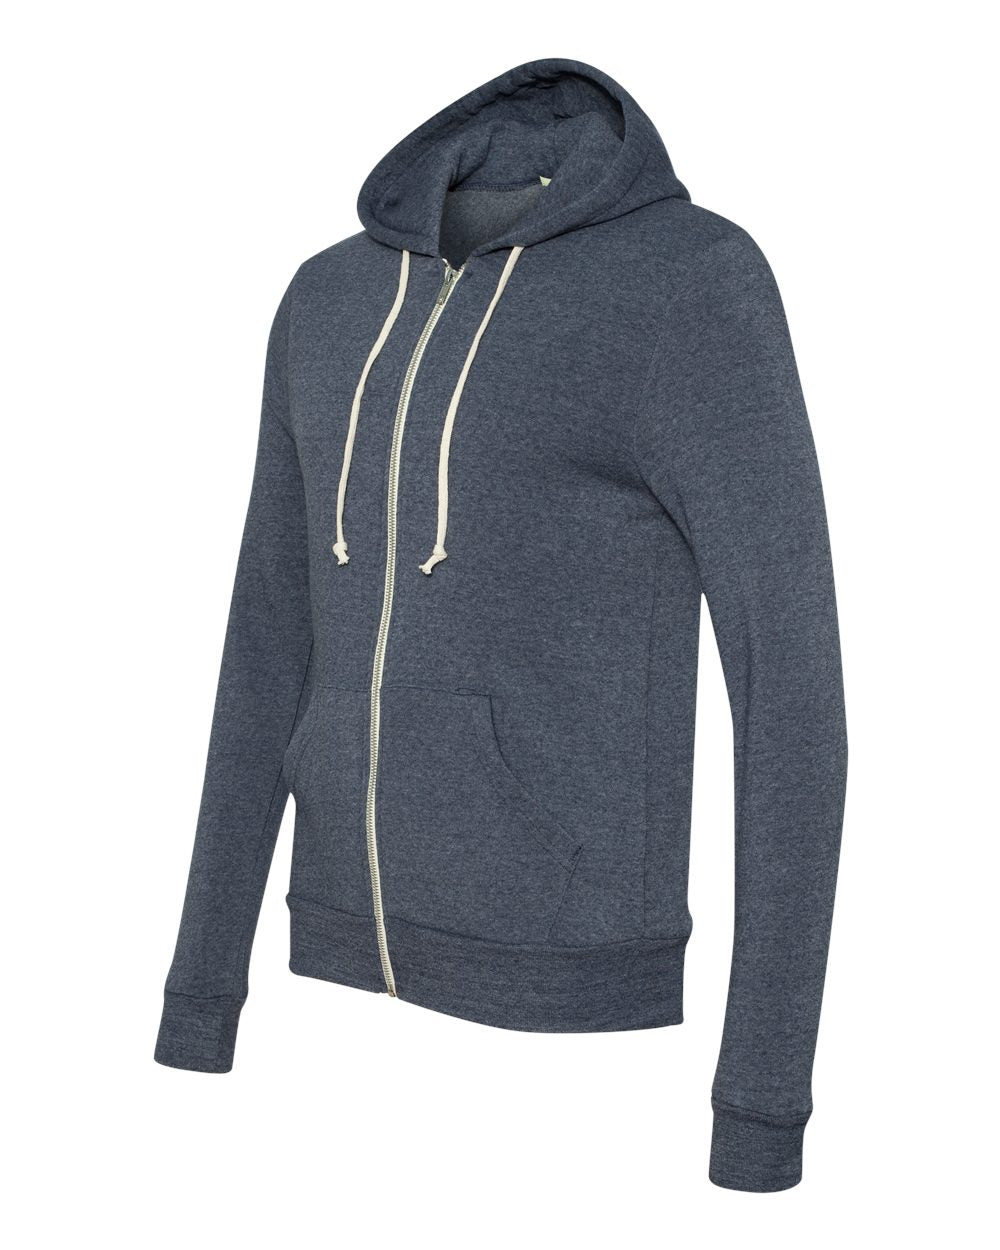 Alternative Rocky Eco-Fleece Full-Zip Hooded Sweatshirt 9590 #color_Eco True Navy